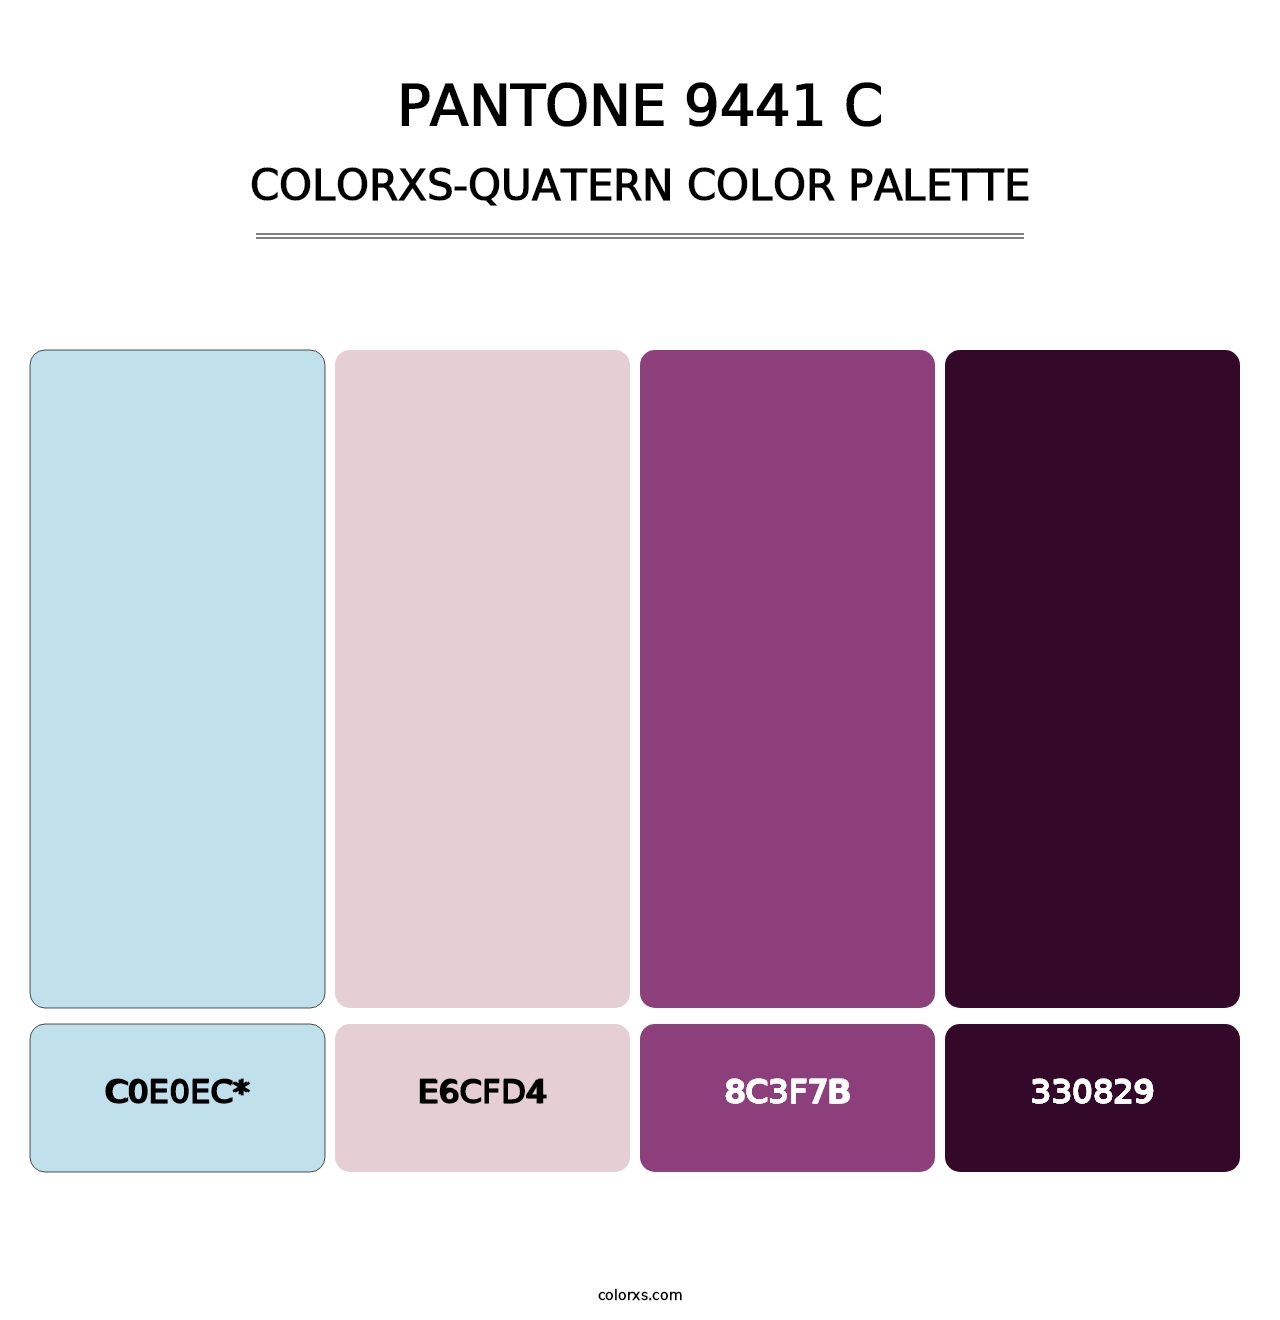 PANTONE 9441 C - Colorxs Quatern Palette